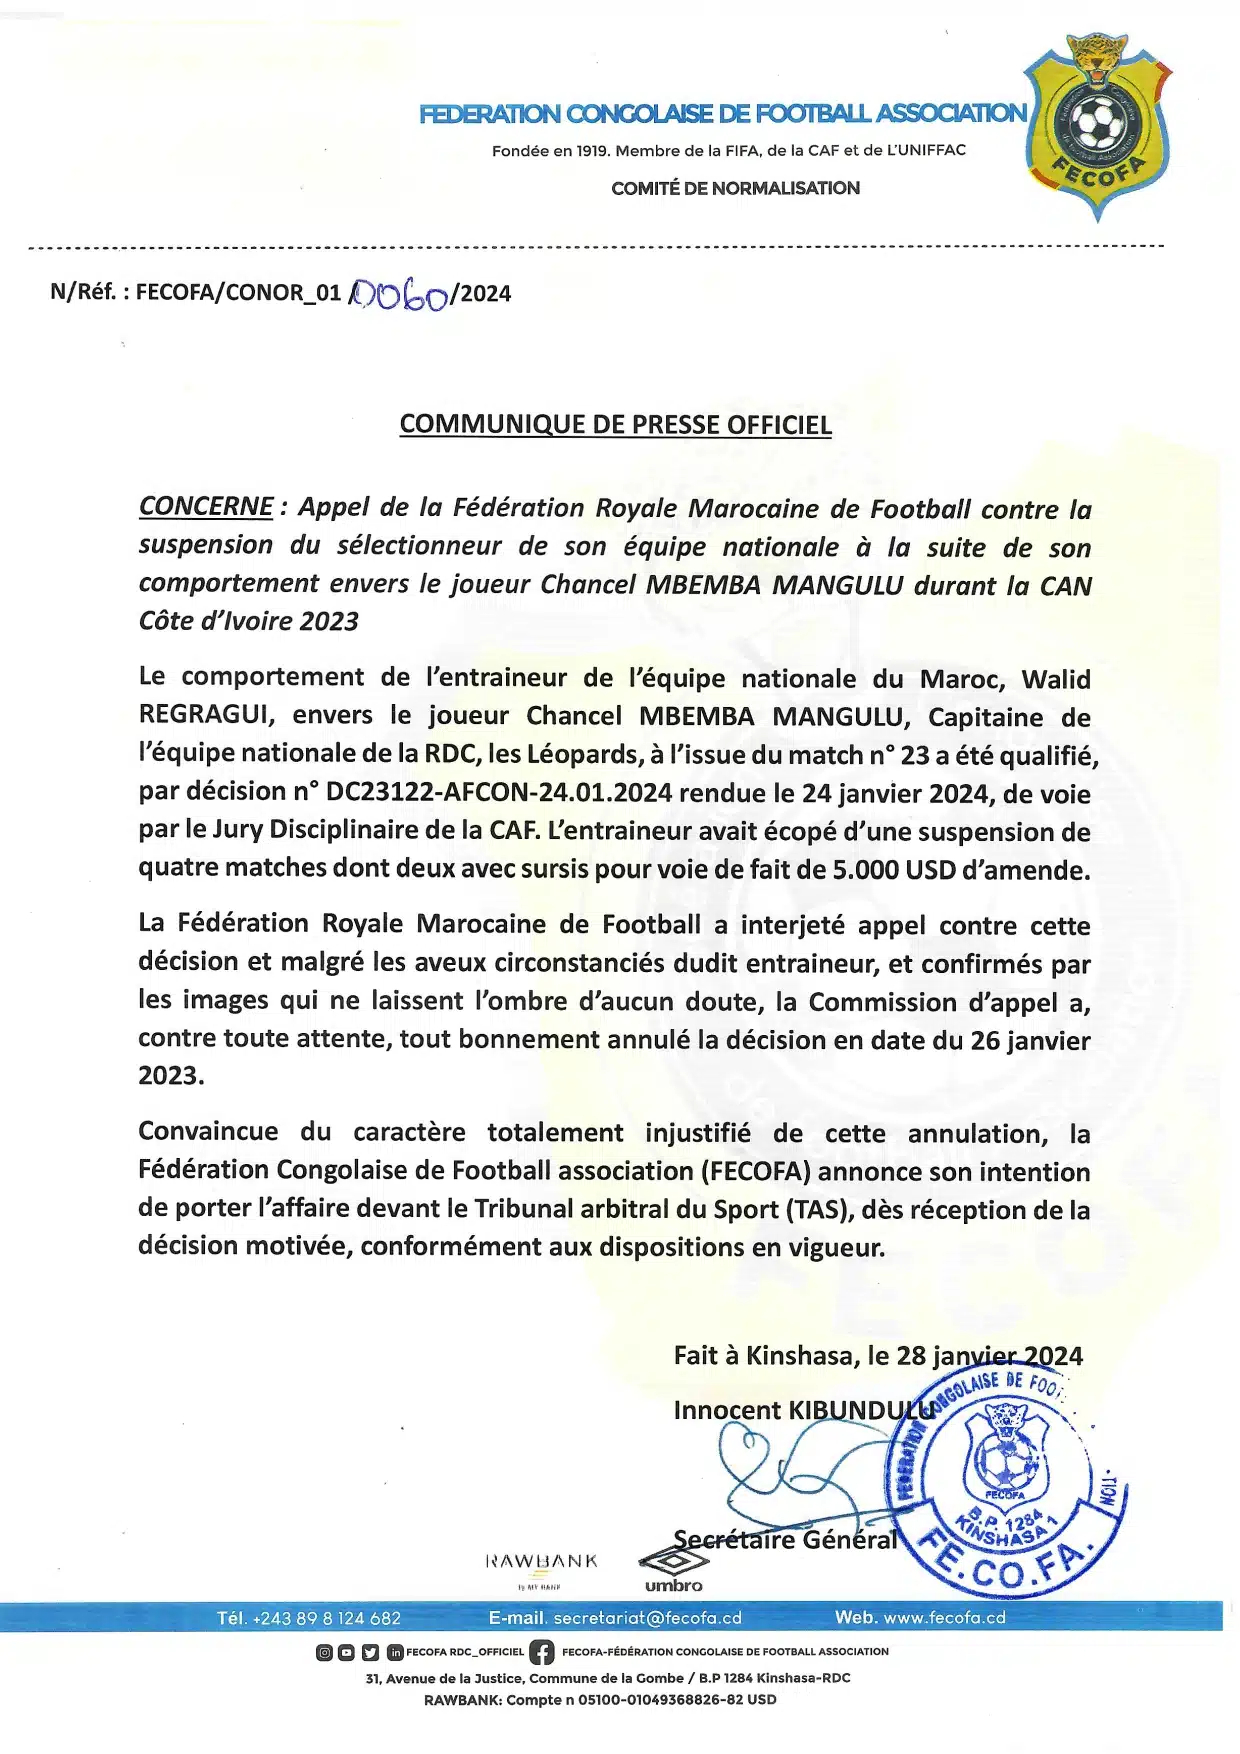 Affaire Regragui : La RDC explore le recours au TAS contre le Maroc